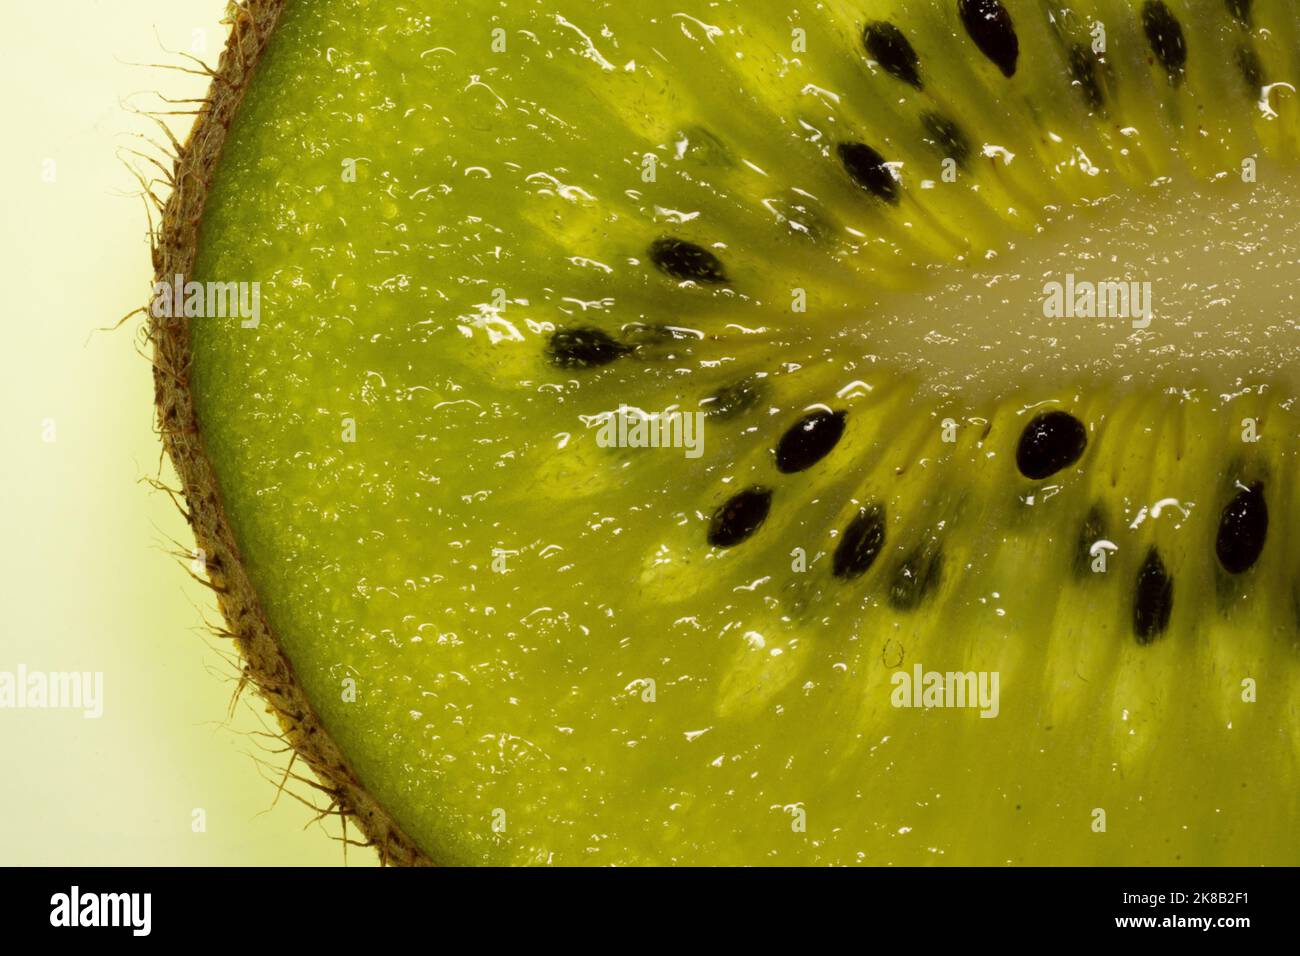 Slice of fresh juicy kiwi fruit close up, macro background.  Stock Photo